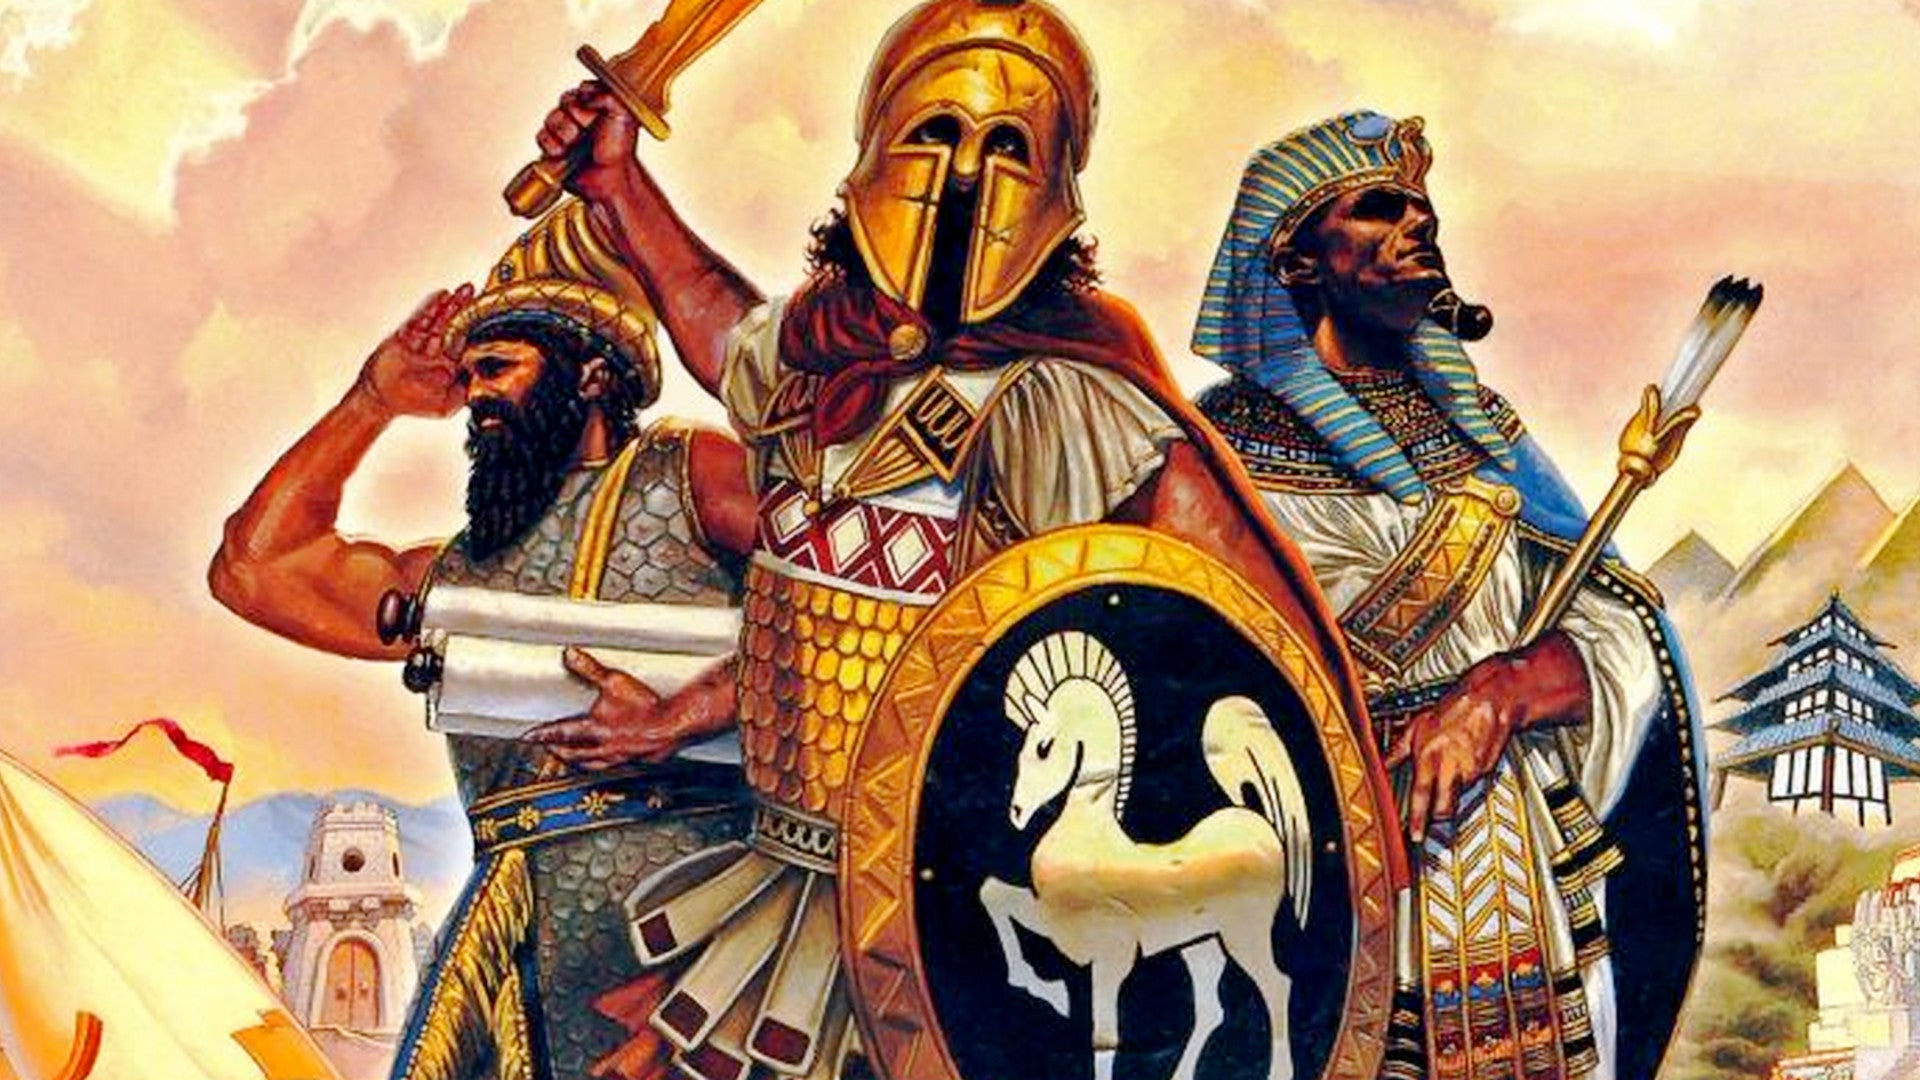 Bilder zu Age of Empires Definitive Edition: Alle Cheats - So verschafft ihr euch einen Vorteil